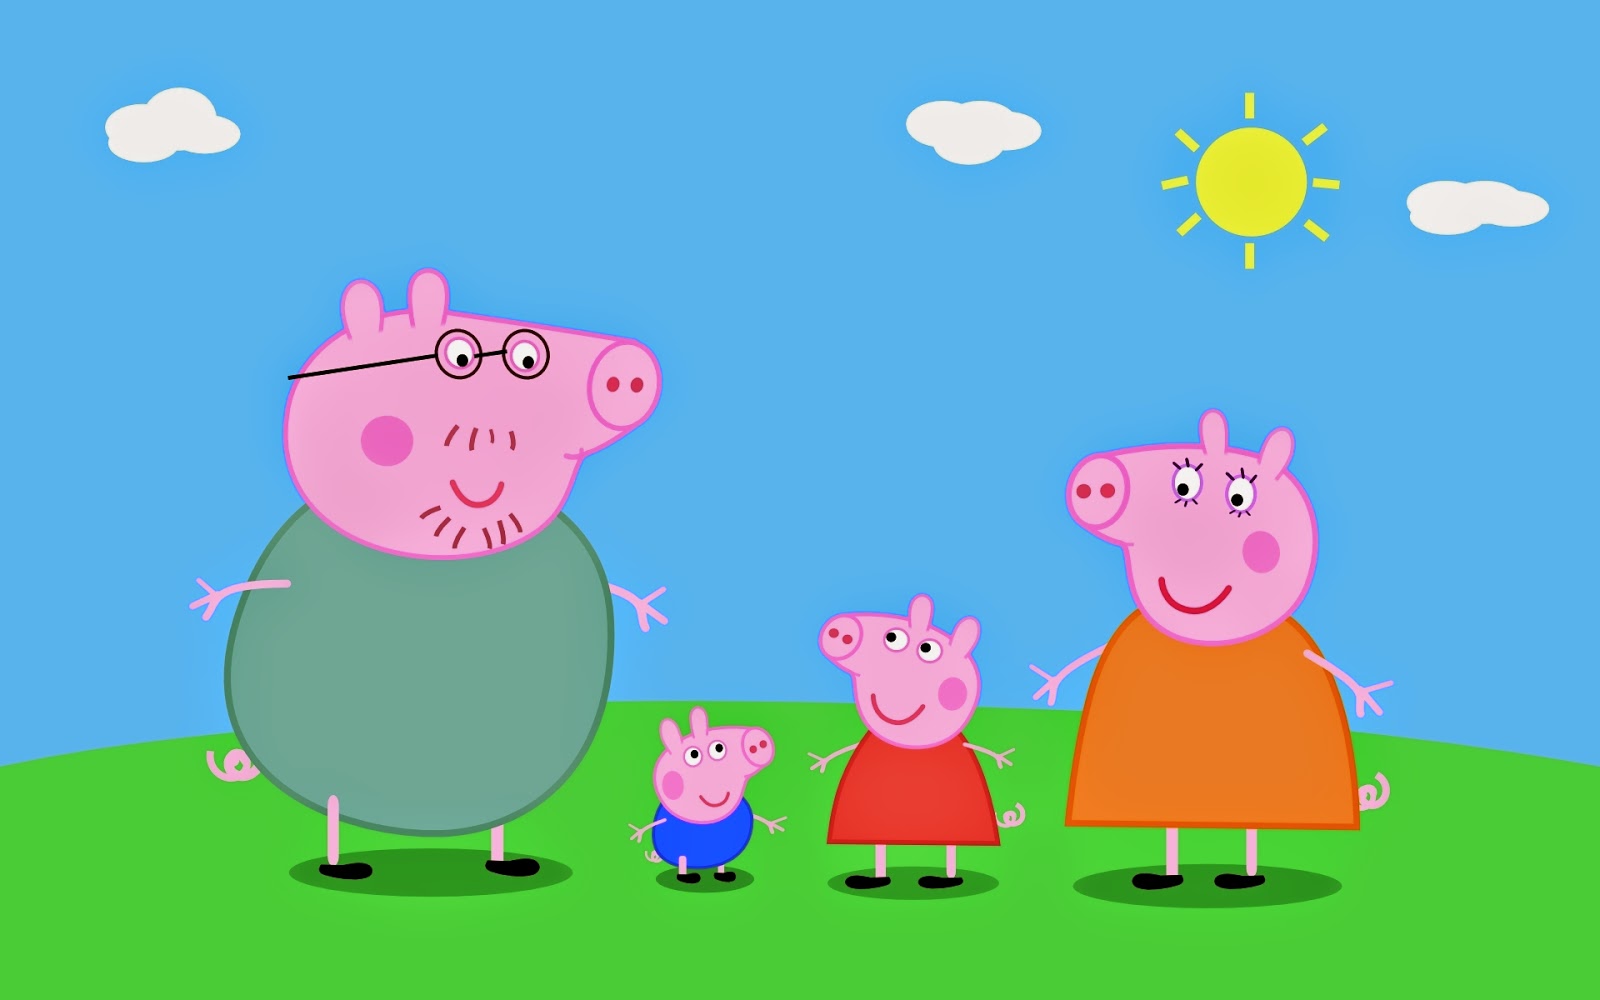 Lo stesso discorso delle "Winx" valse e vale ancora tutt oggi anche per "Peppa Pig" Nel 2004 la serie della E1 Kids arriv² negli U S A grazie a Cartoon